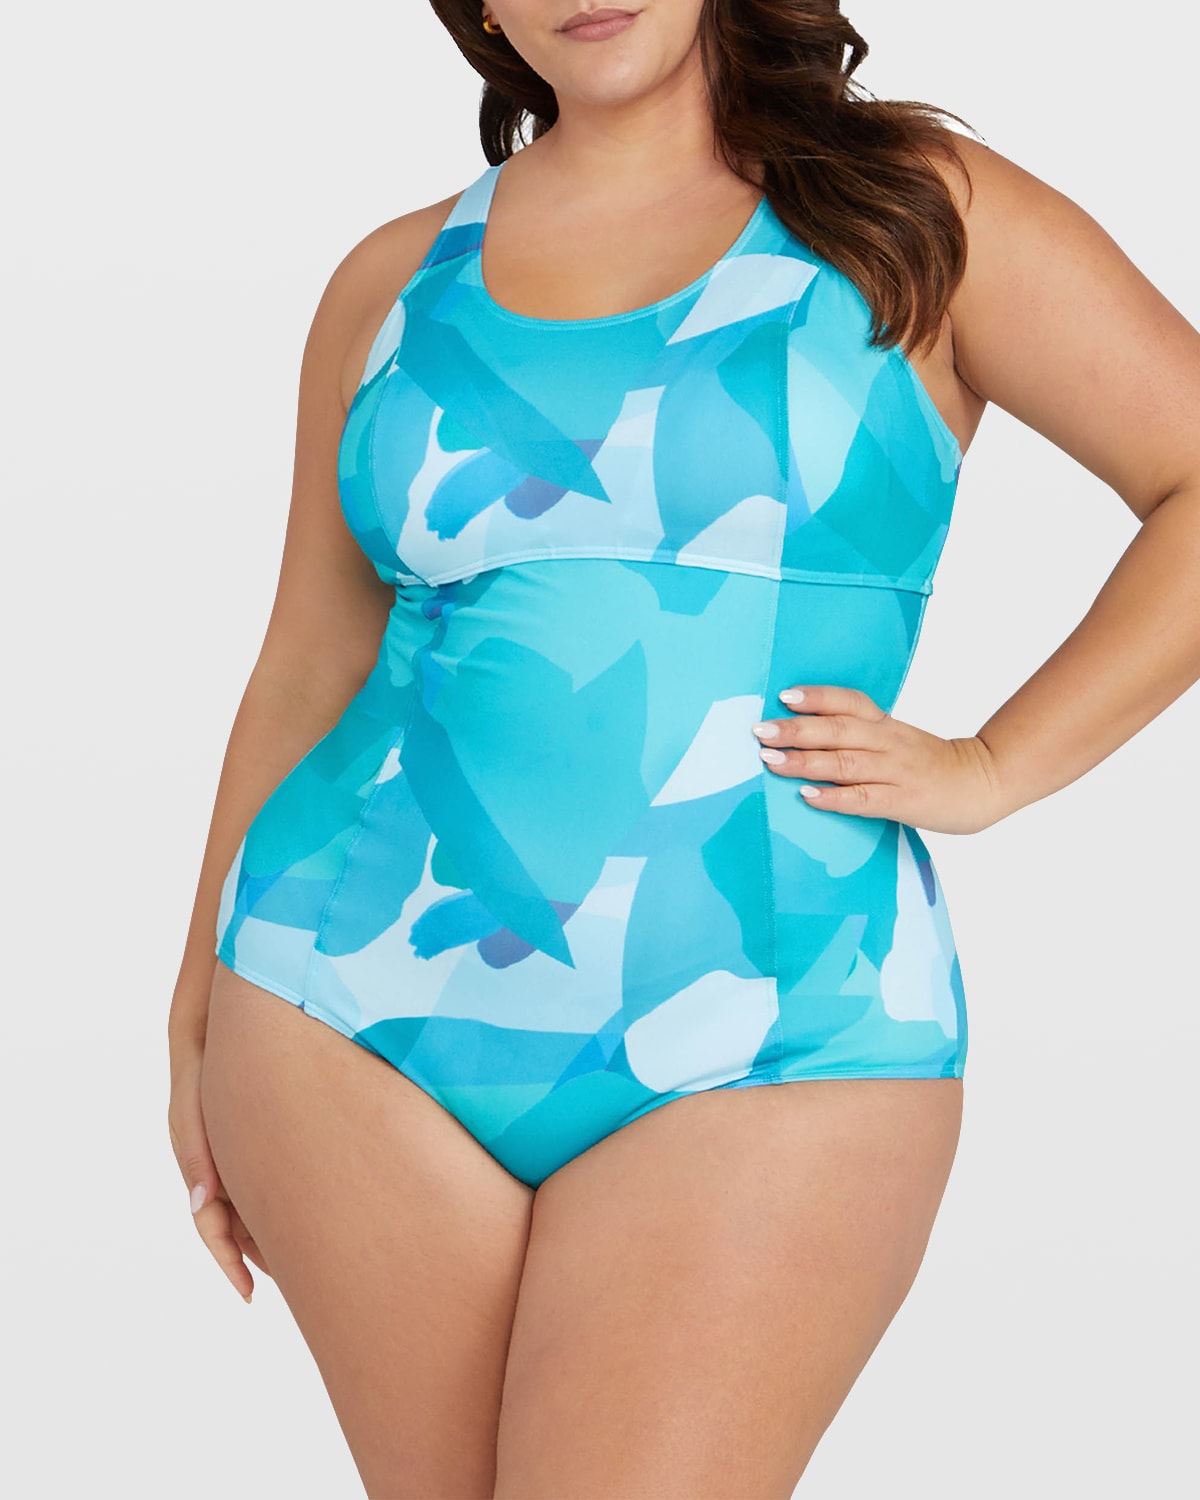 Artesands Plus Size Monet One-Piece Swimsuit